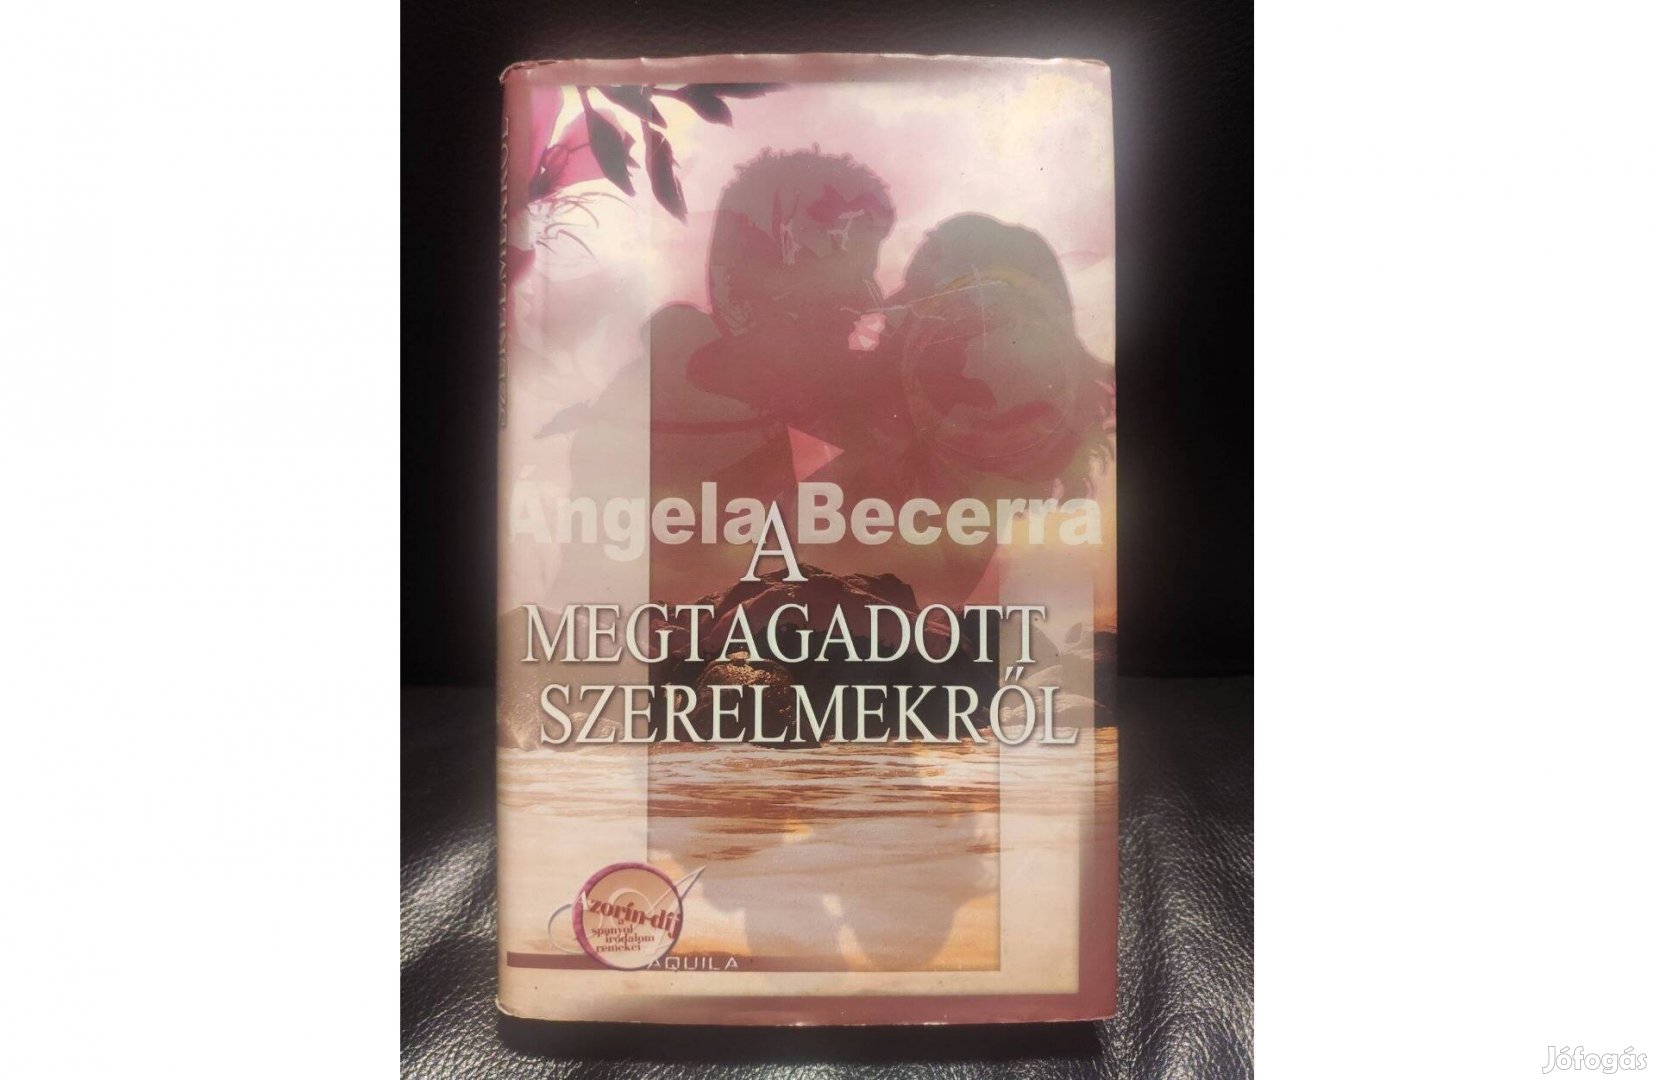 Angela Becerra: A megtagadott szerelmekről